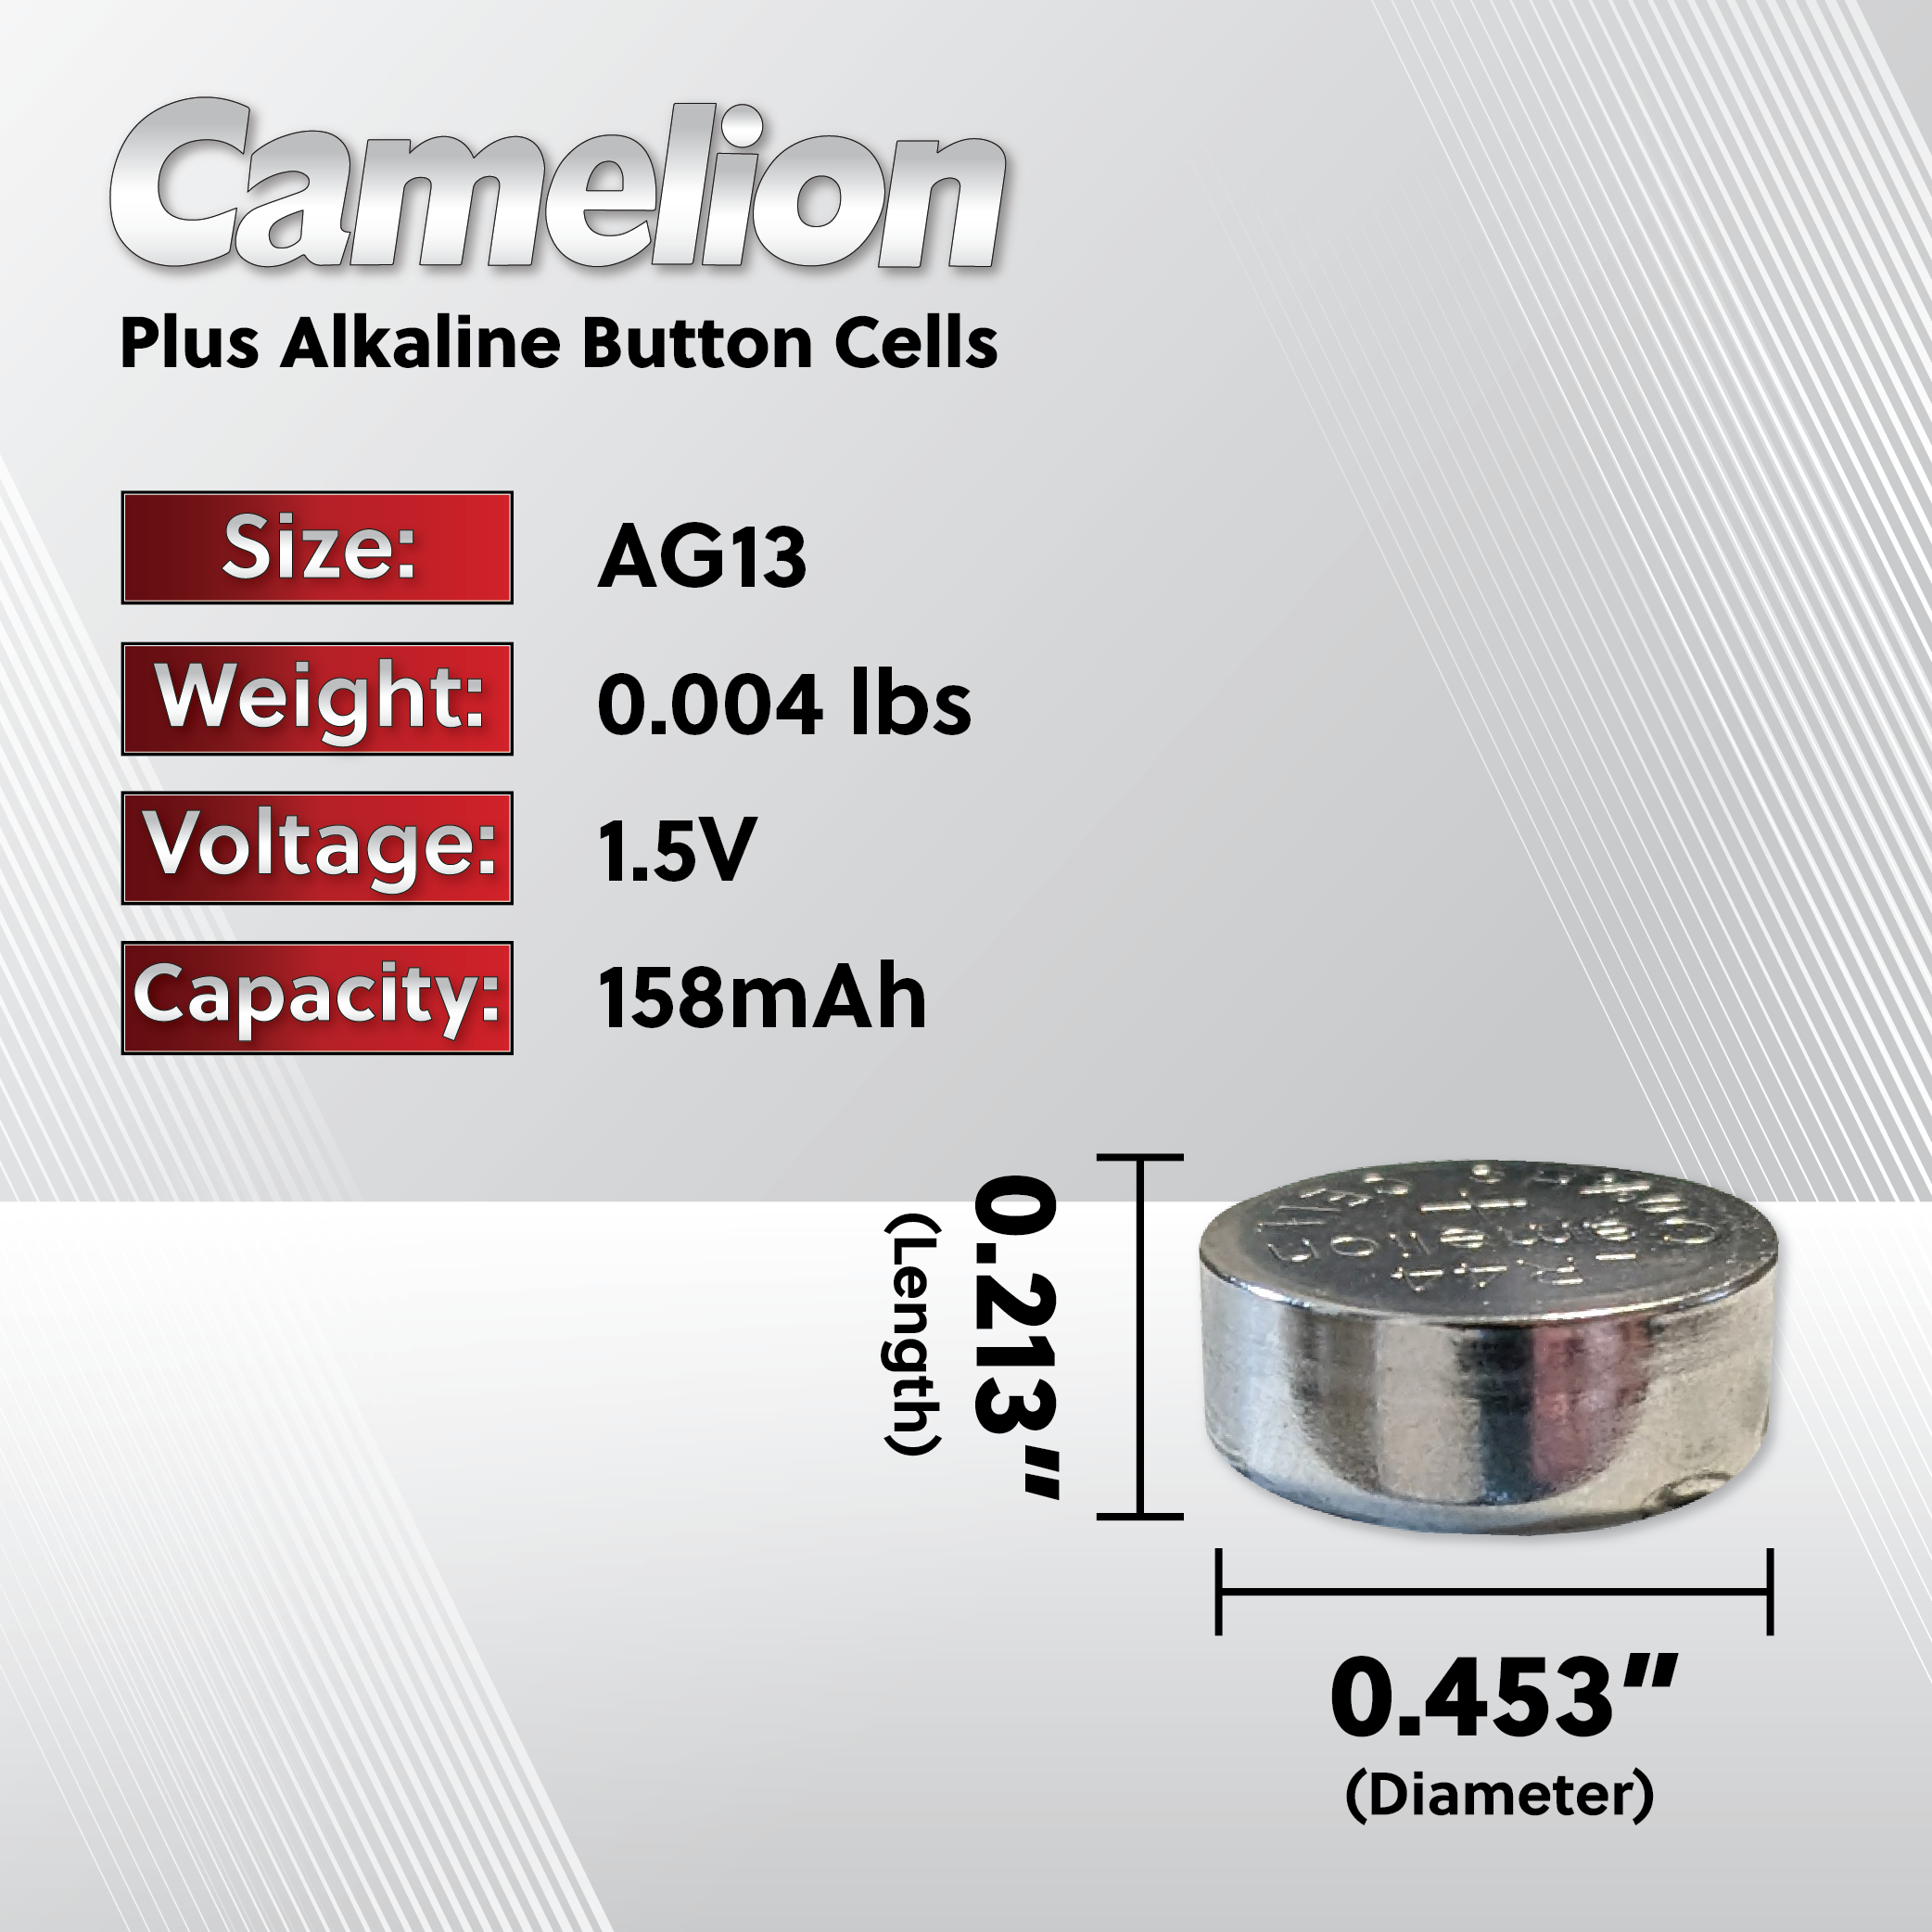 Camelion AG13 / 357 / LR44 1.5V Button Cell Battery